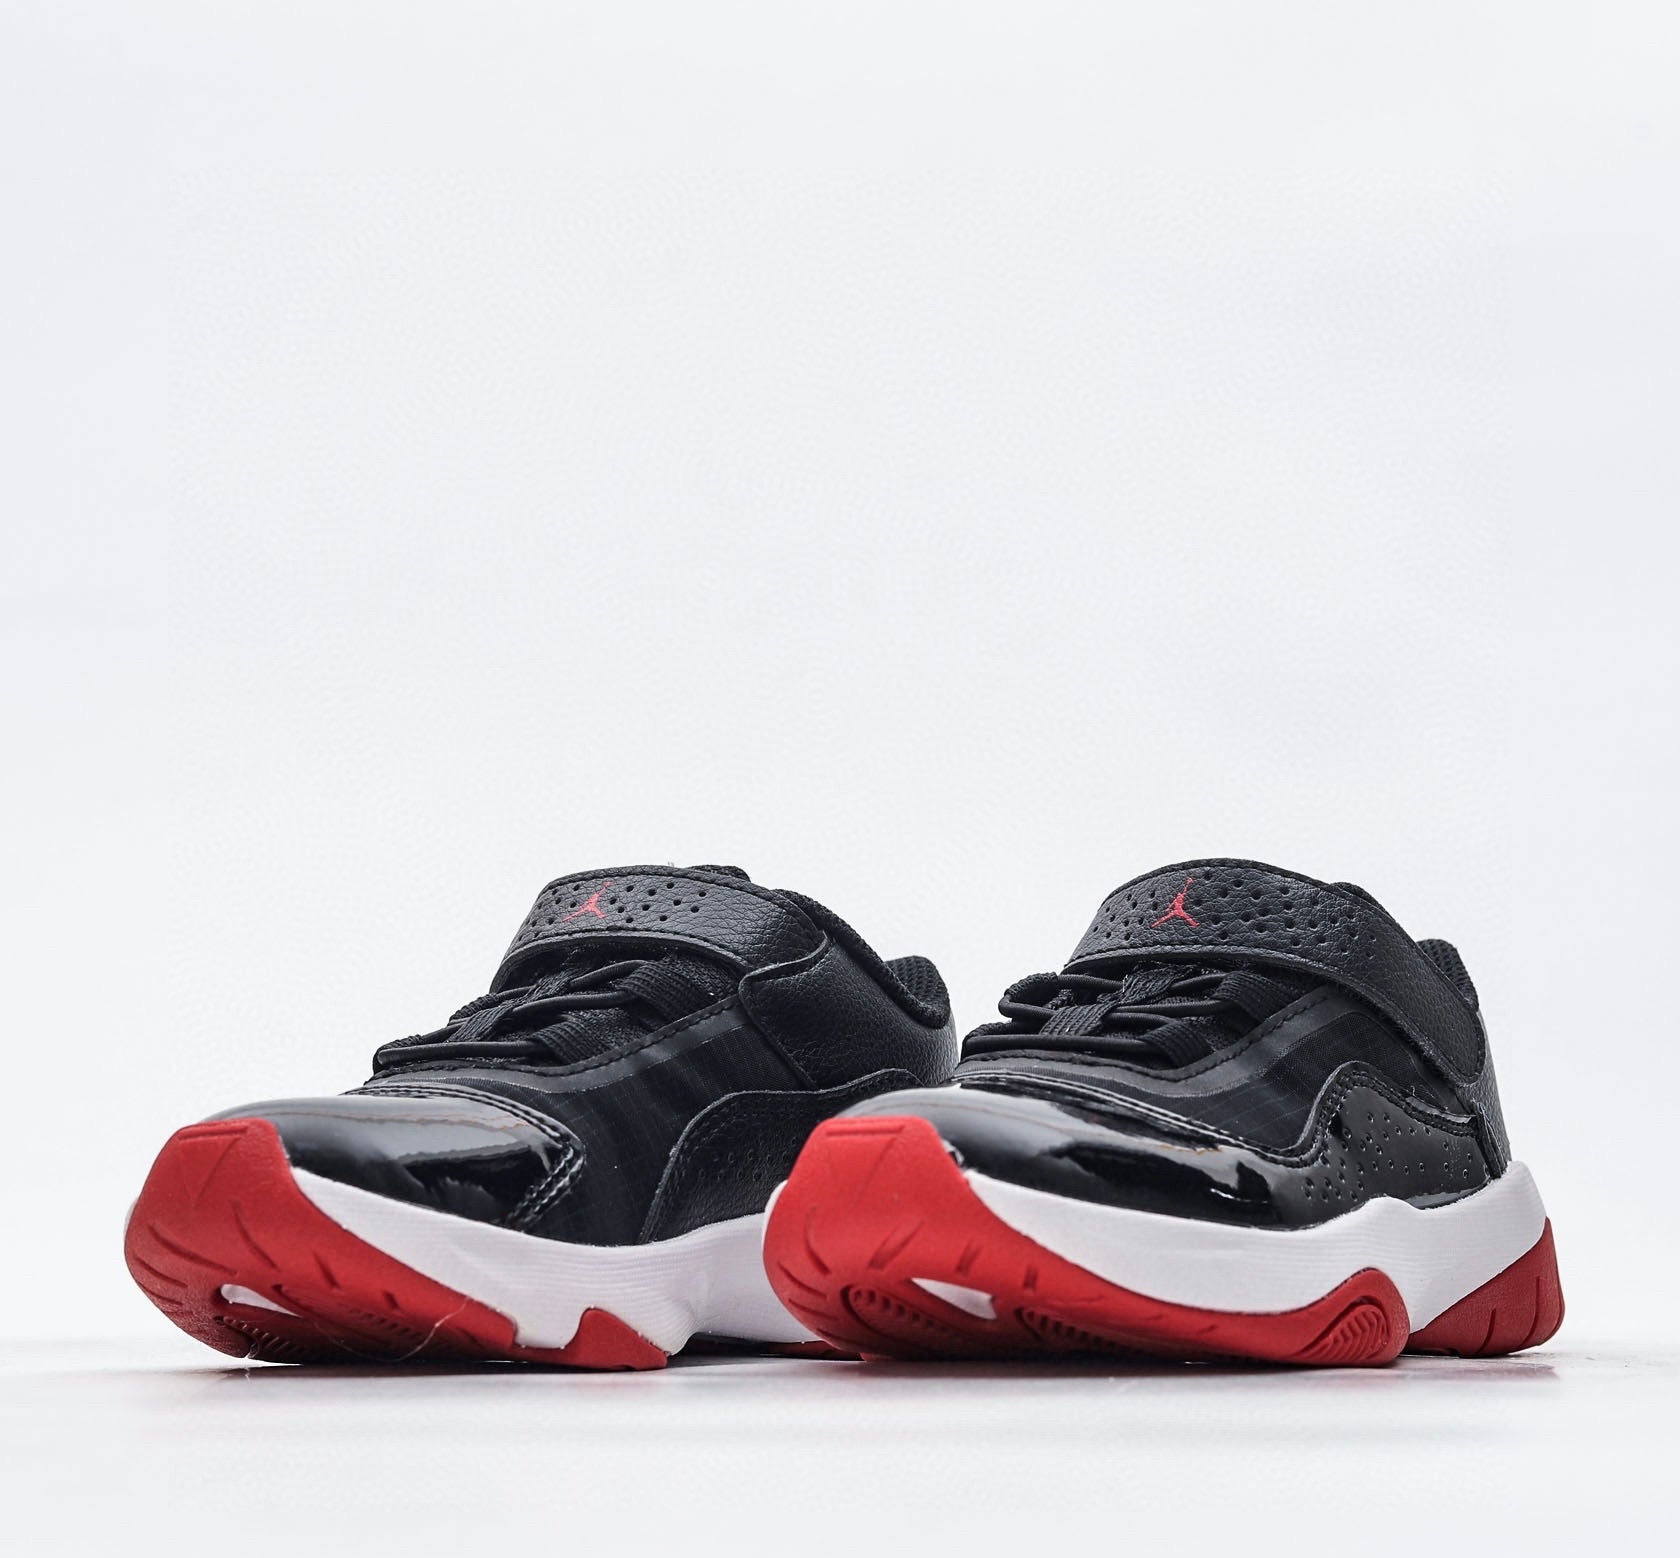 Nike air jordan retro low cut black and red shoes